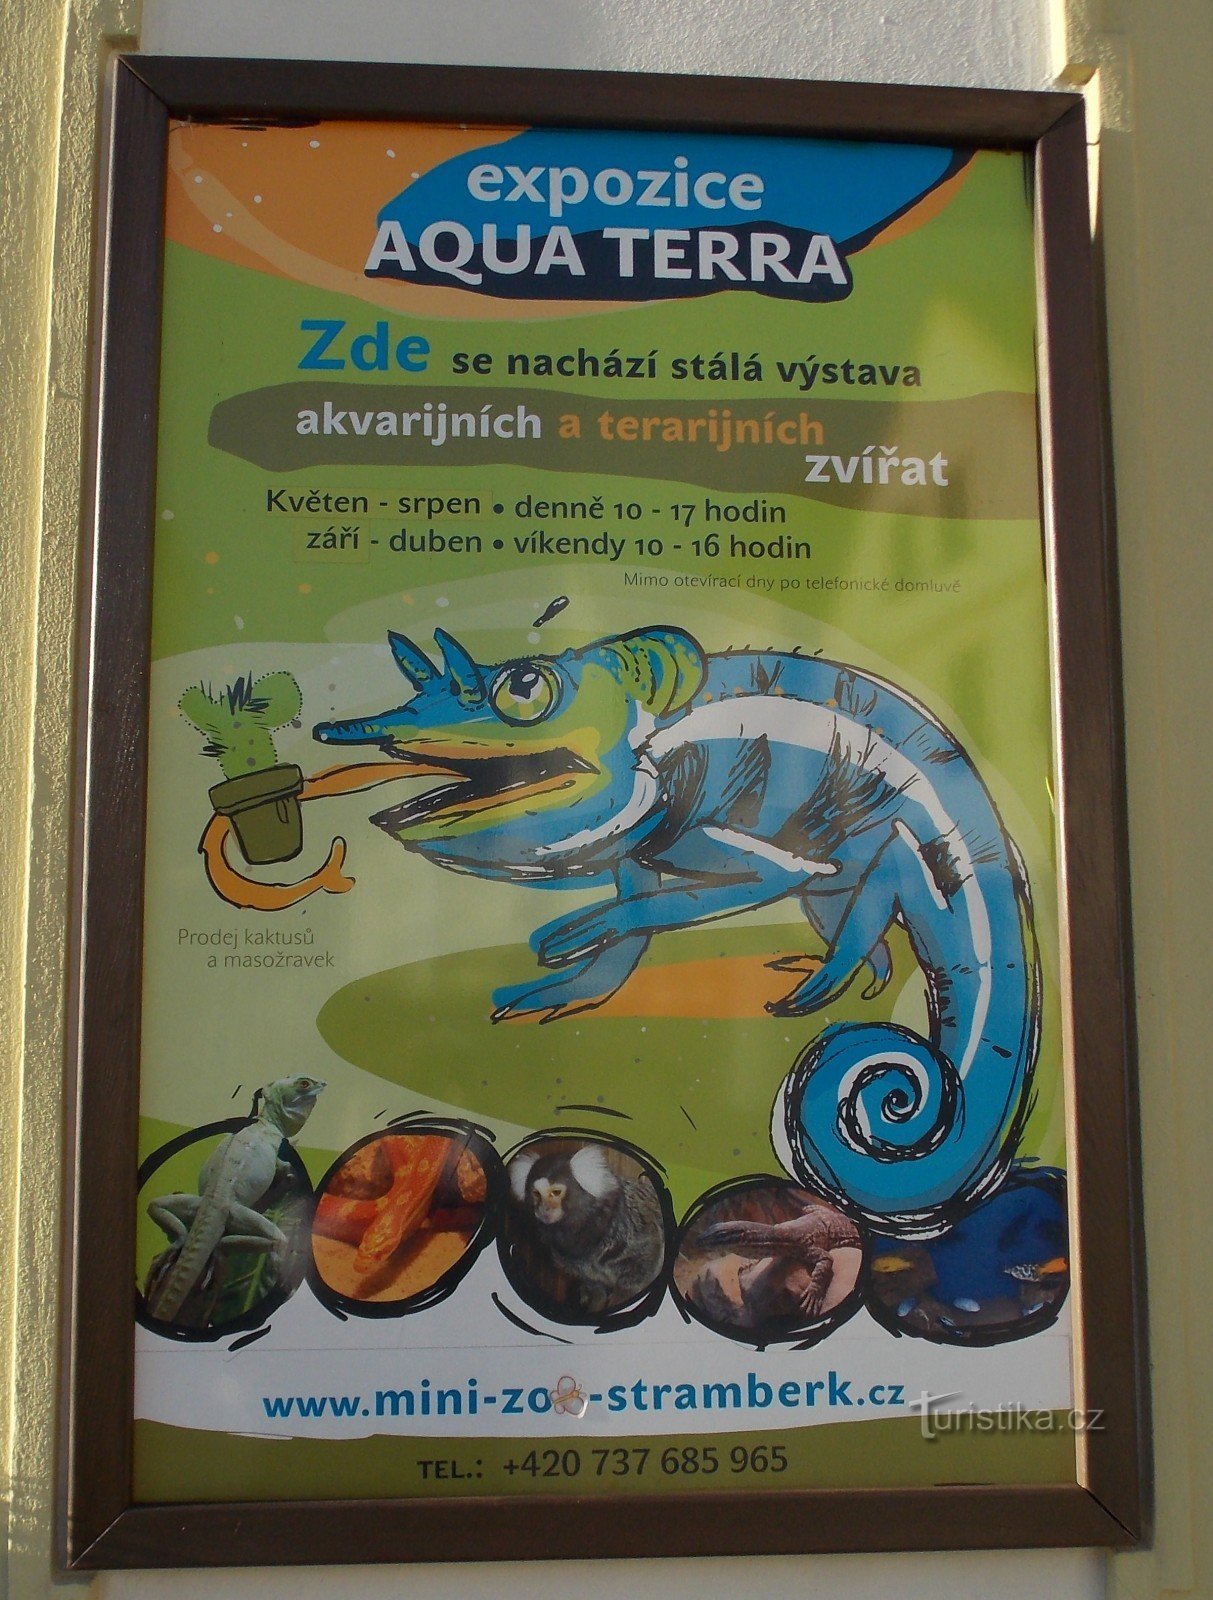 MINI - ZOO Aqua Terra w Štramberku